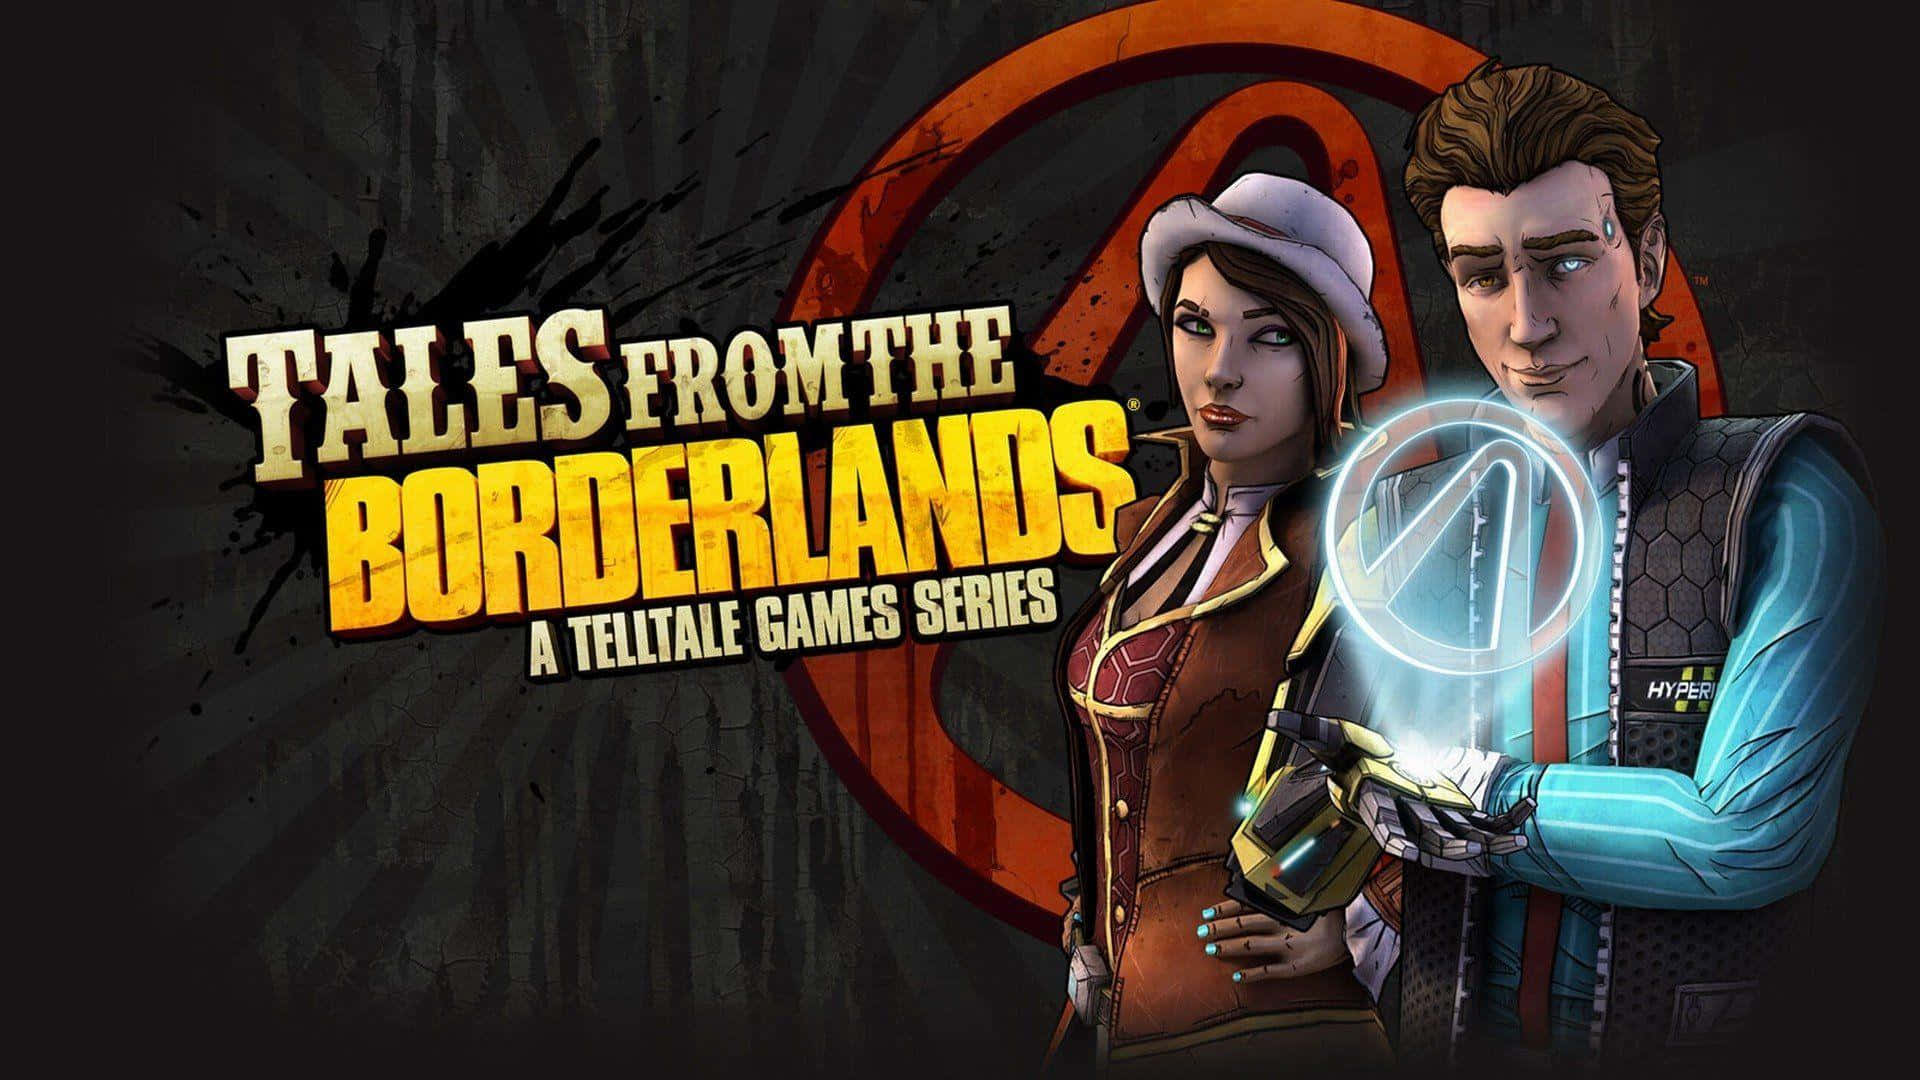 Emozionantegameplay Ricco Di Azione Di Borderlands Con Battaglie Epiche E Personaggi Unici